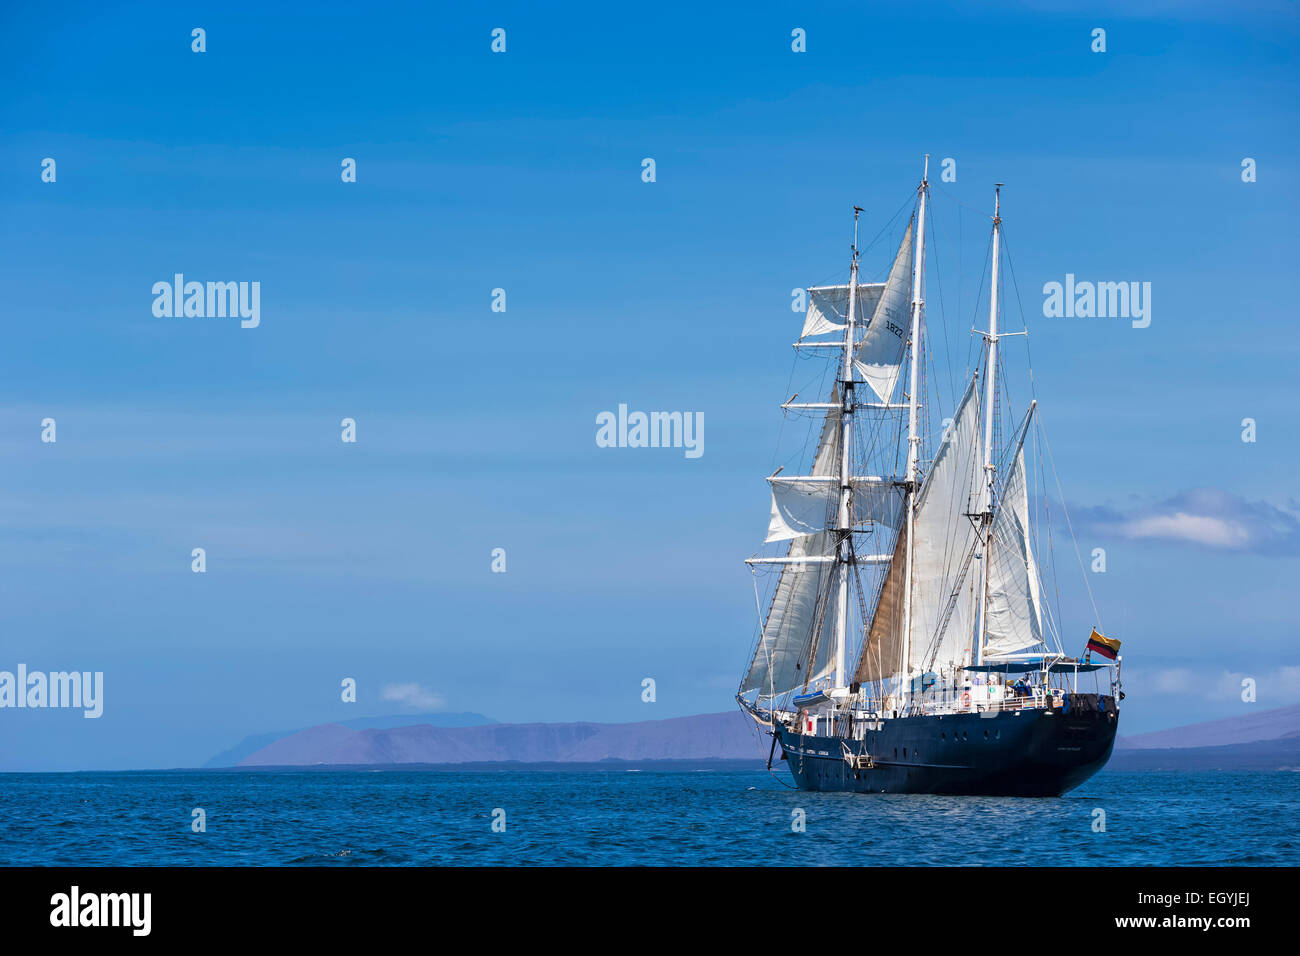 Pacific Ocean, sailing ship under sail at Galapagos Islands Stock Photo